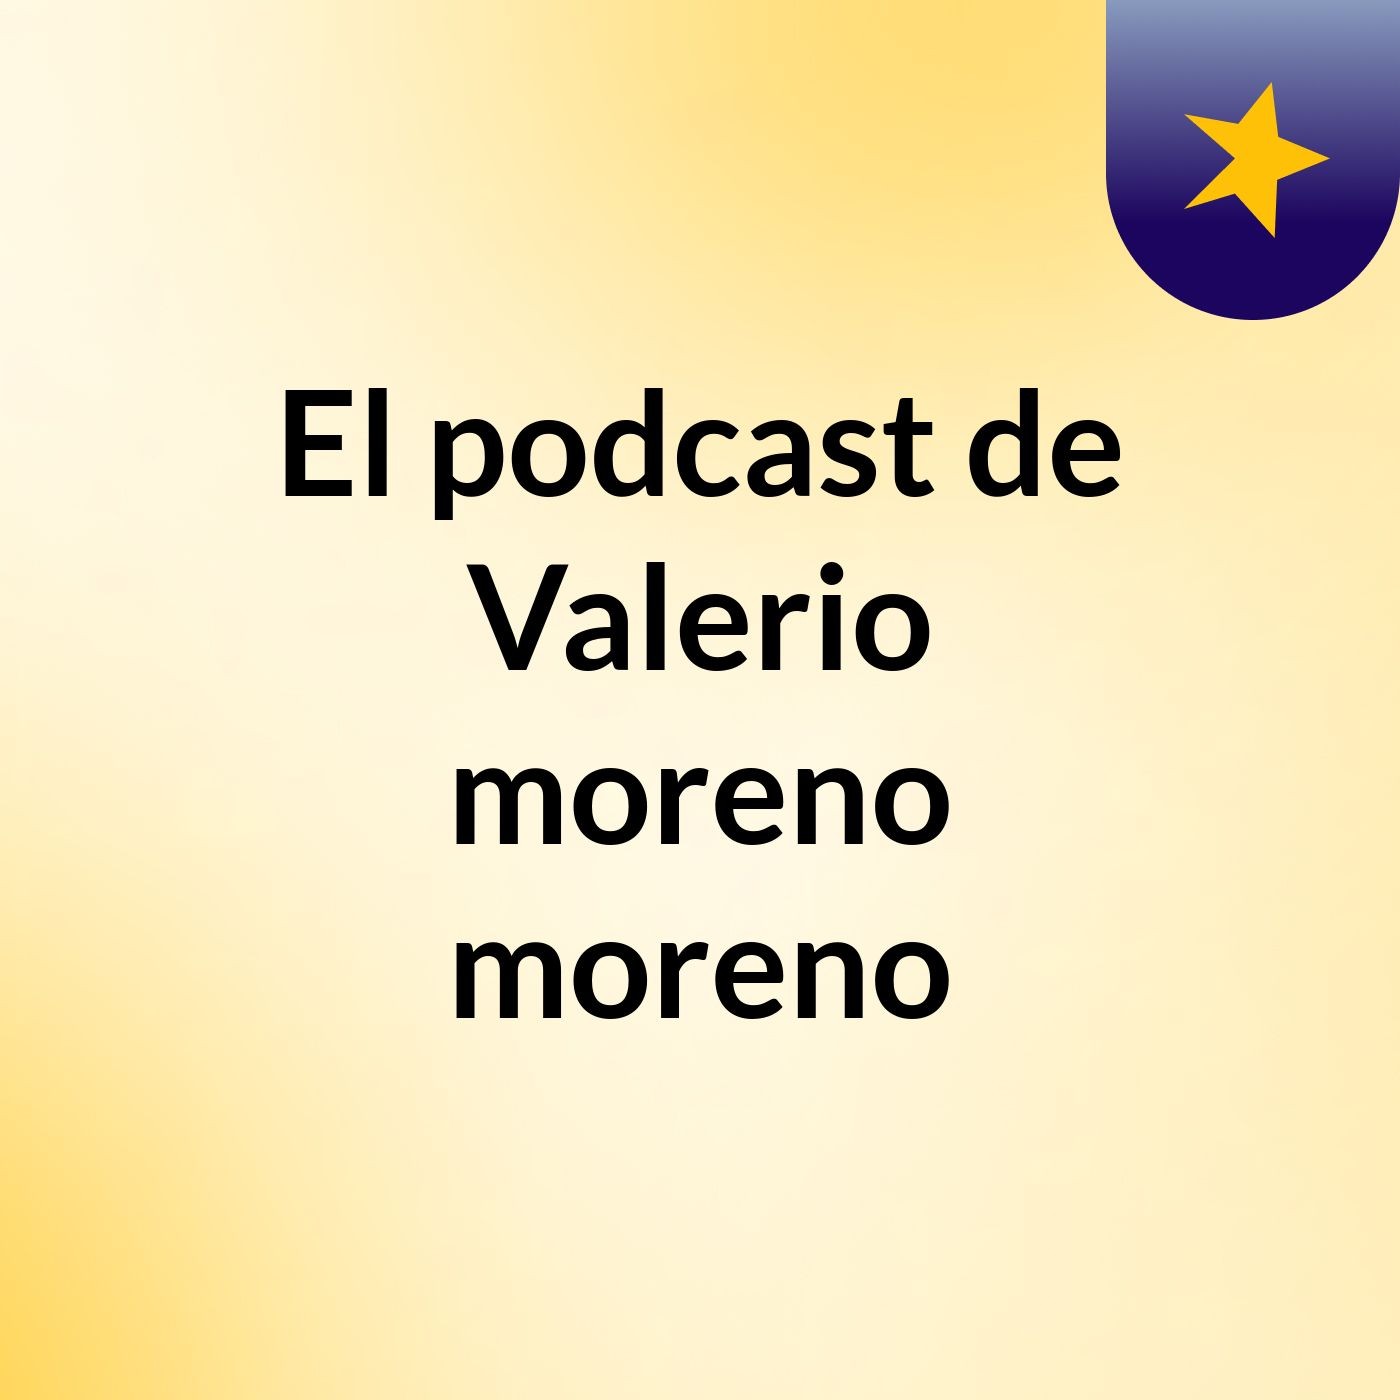 El podcast de Valerio moreno moreno